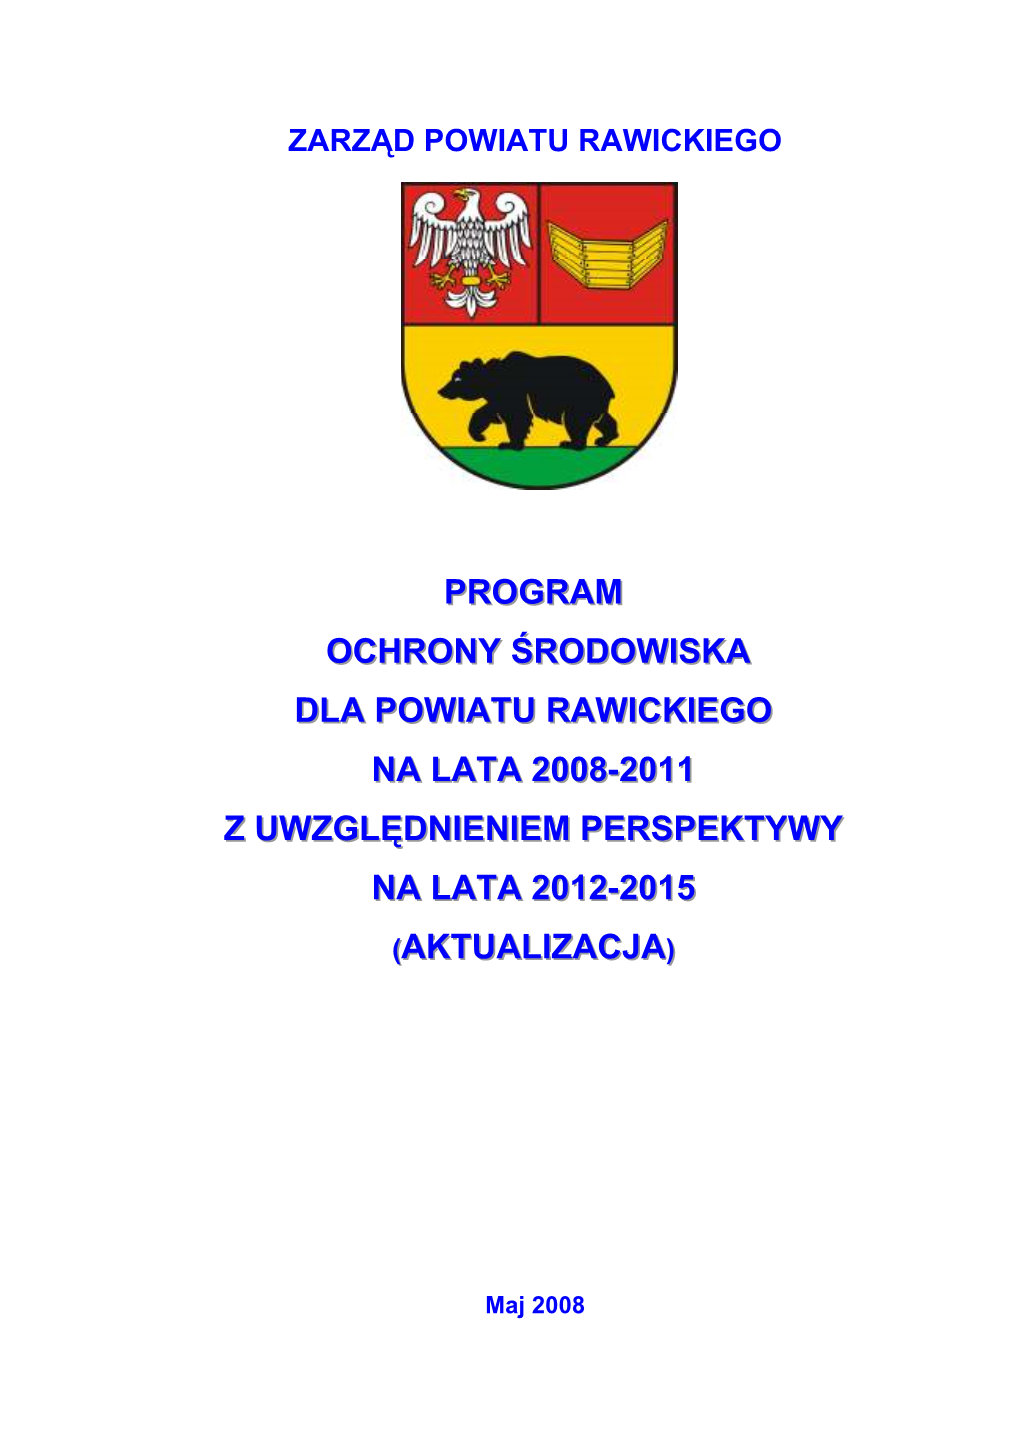 Program Ochrony Środowiska Dla Powiatu Rawickiego Na Lata 2008